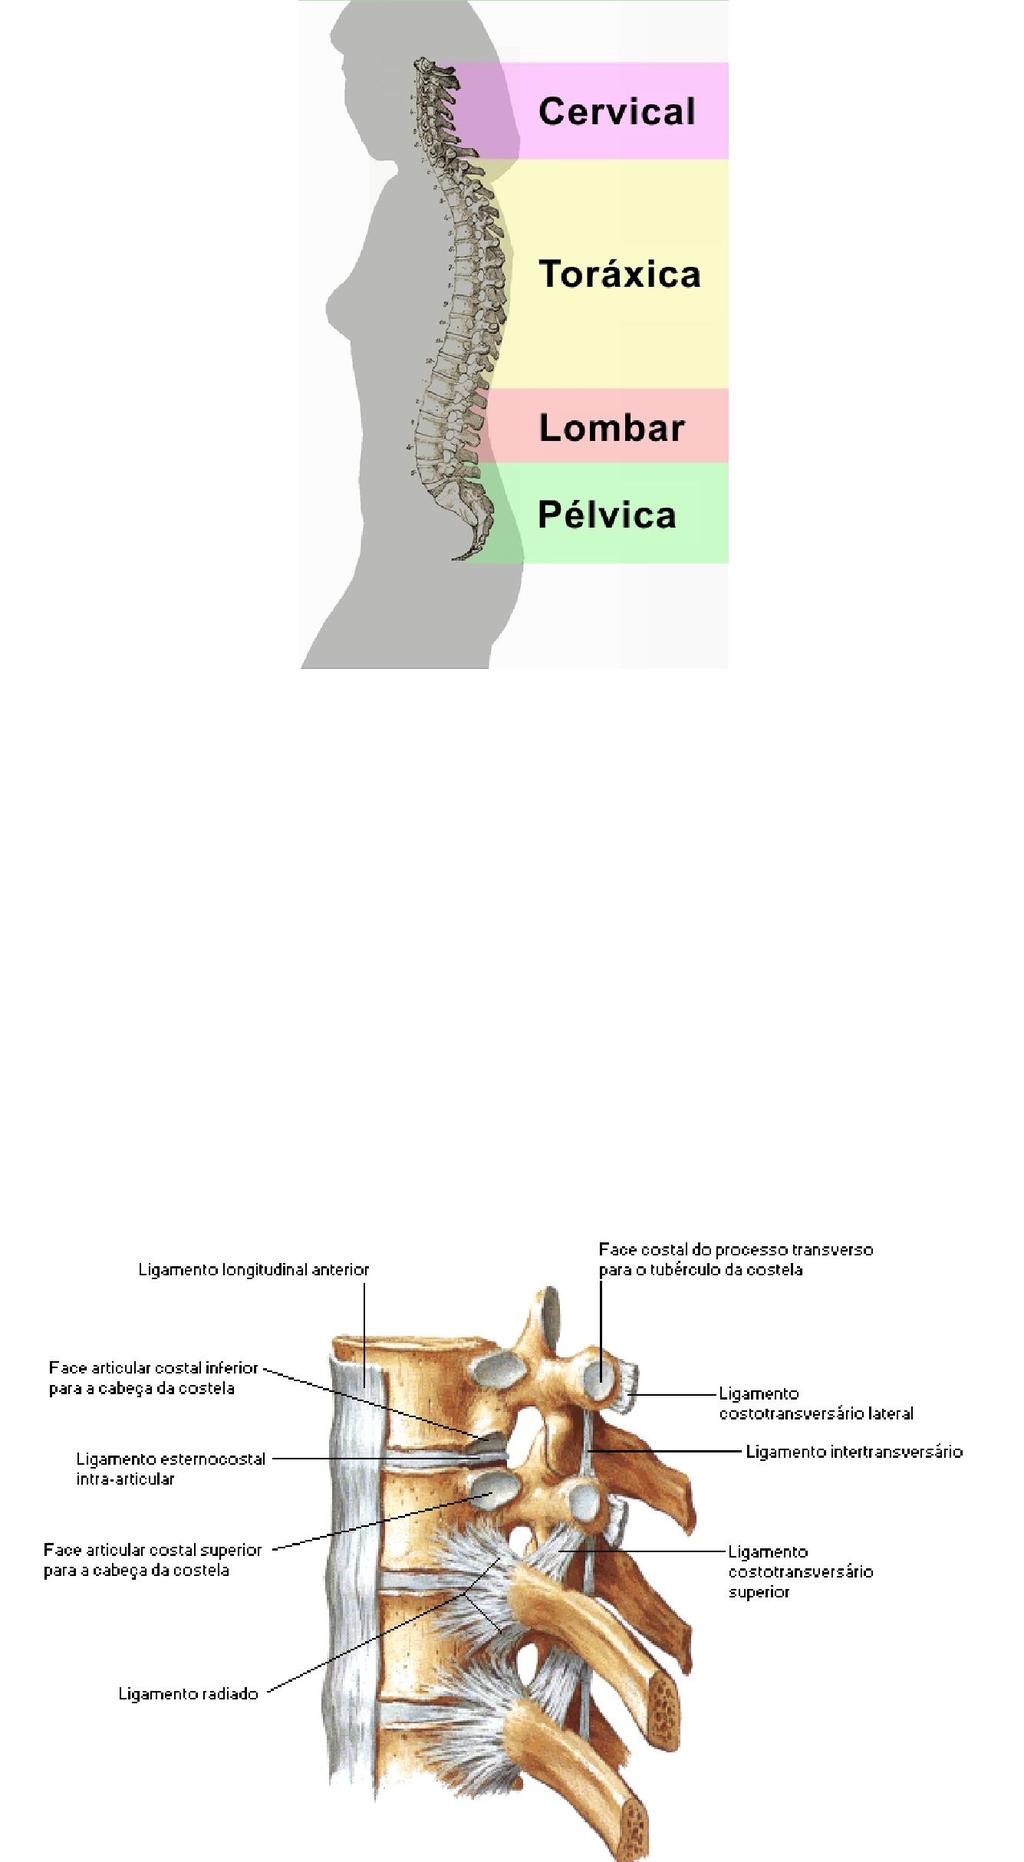 3 disco apresenta três partes: o anel fibroso, o núcleo pulposo e as placas terminais cartilaginosas. Fonte: http://laclinfisioterapia.blogspot.com.br/2012/08/anatomia-da-coluna.